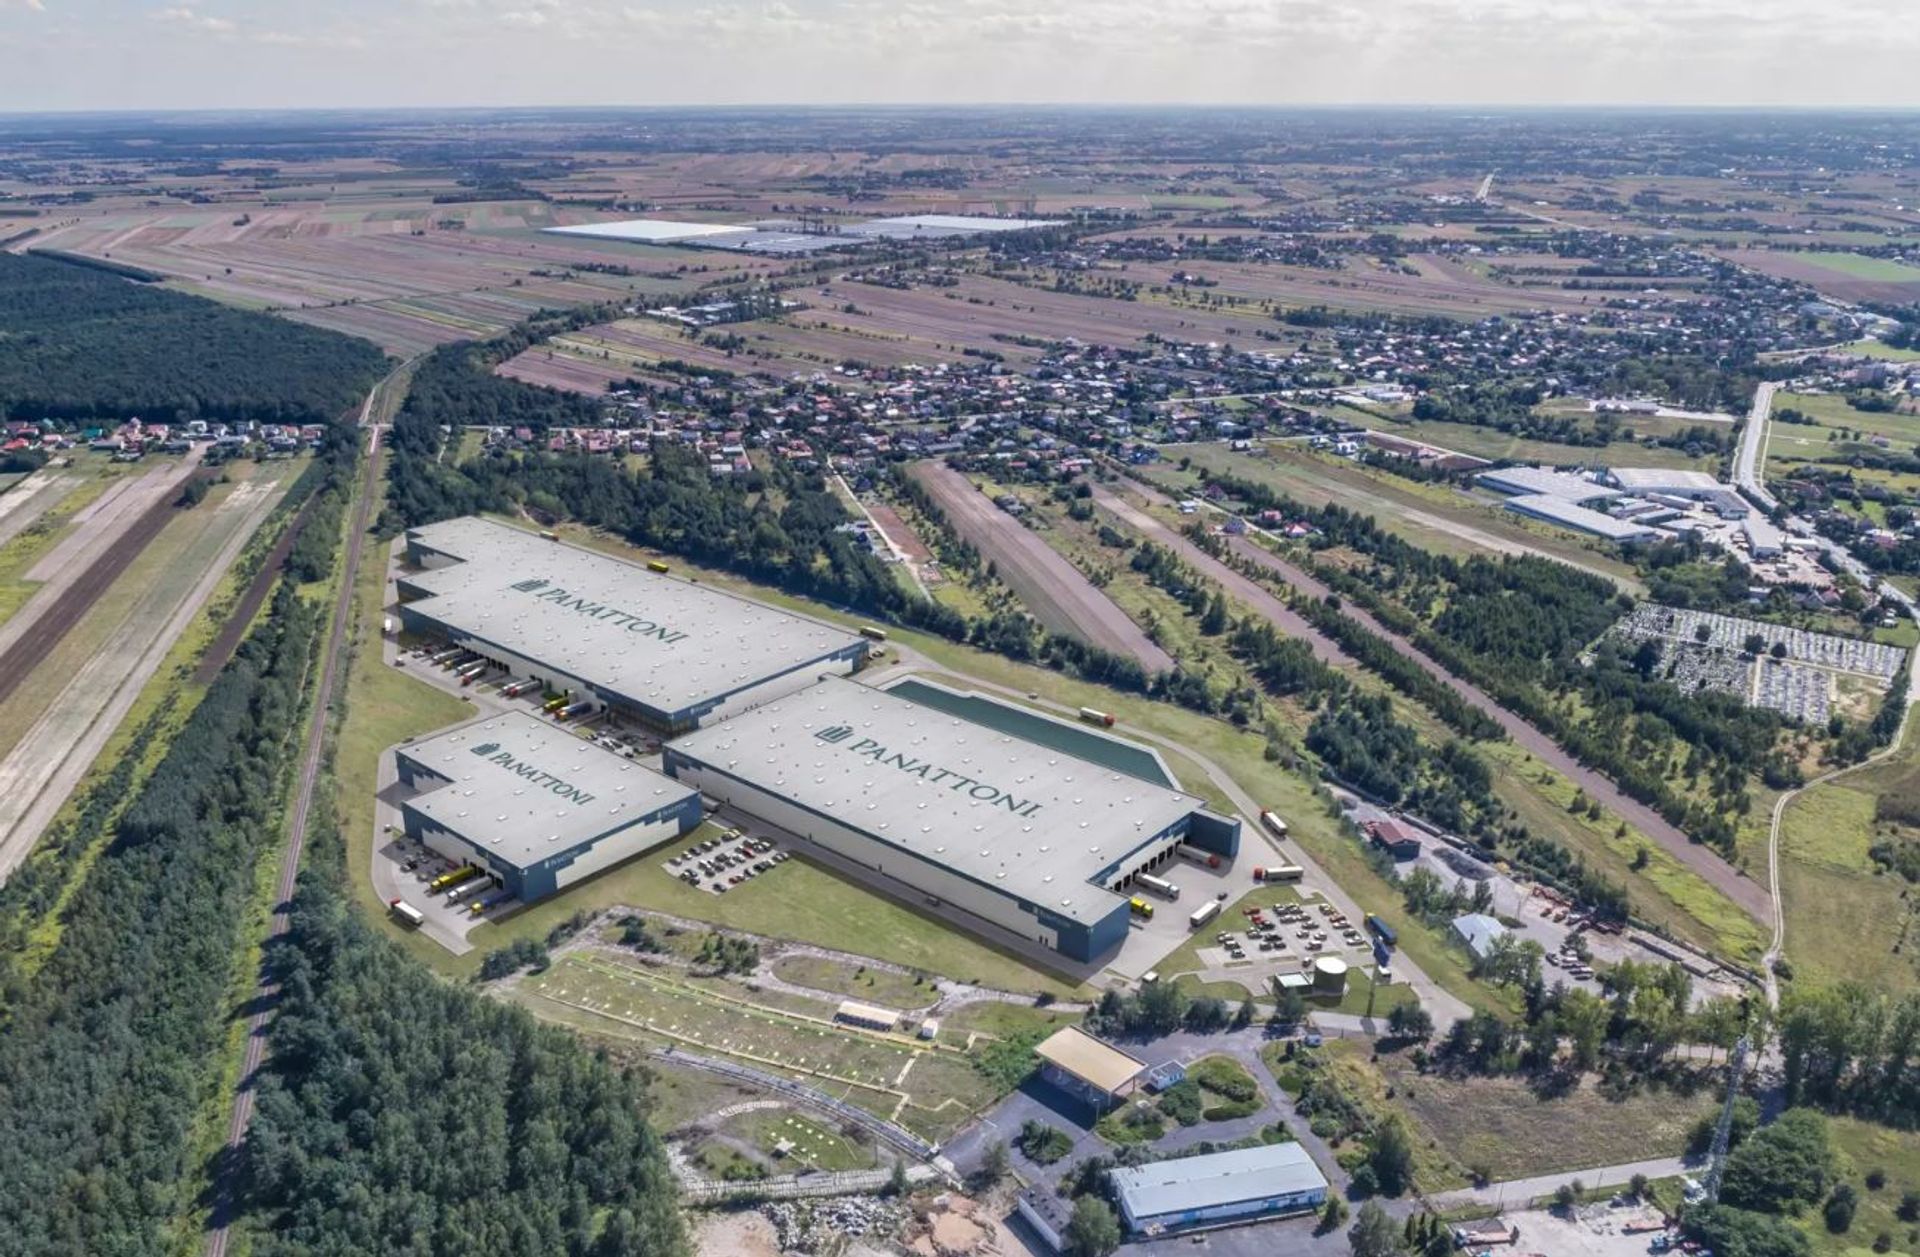 Panattoni uzyskało ponad 48 mln euro kredytu na największy park przemysłowy w Polsce wschodniej – Panattoni Park Lublin II